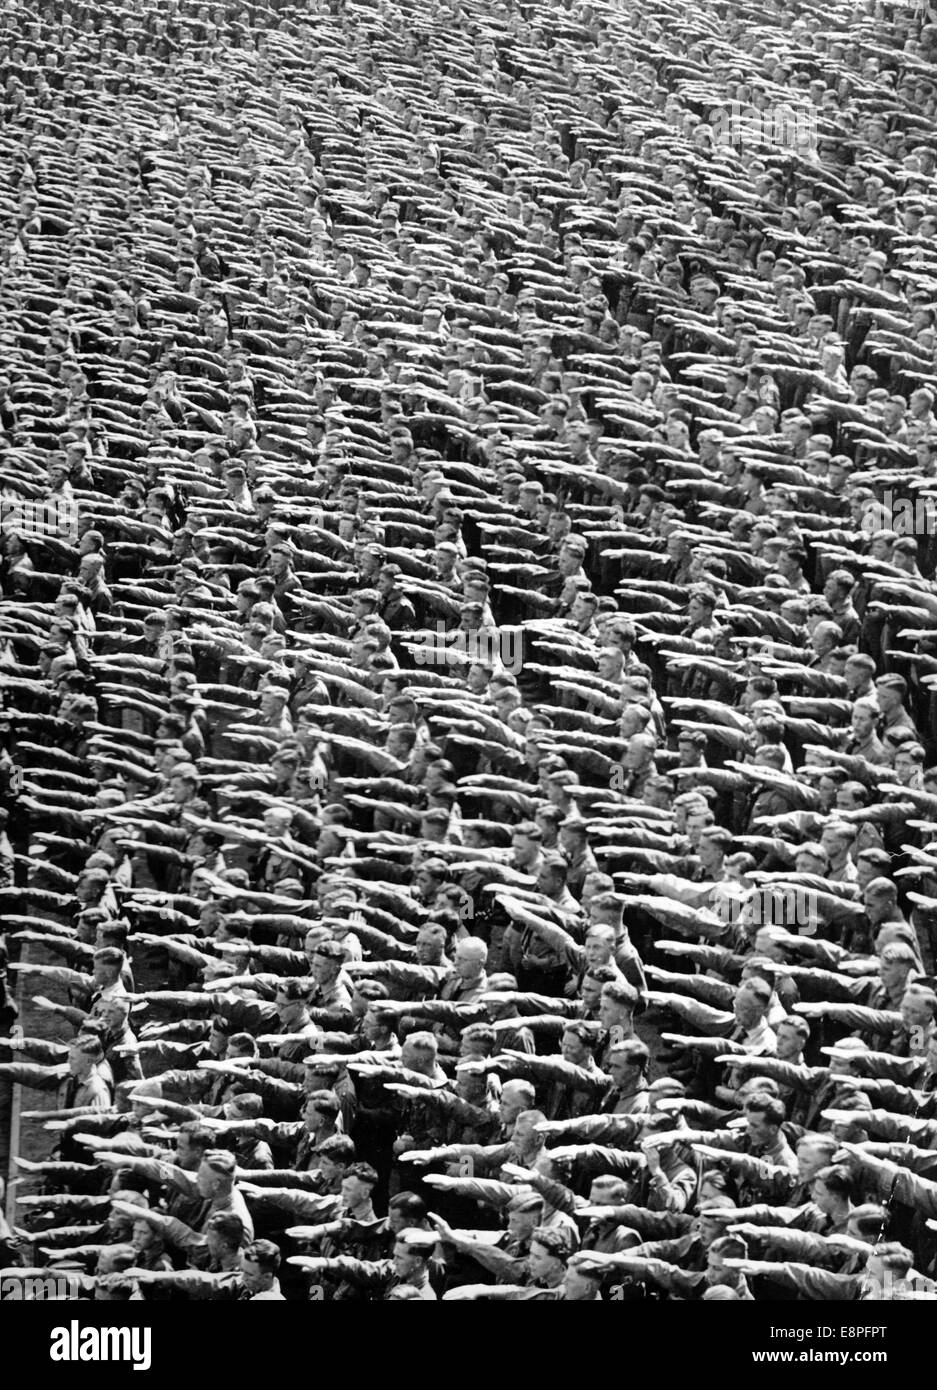 Rallye de Nuremberg 1935 à Nuremberg, Allemagne - les membres de la Jeunesse d'Hitler (HJ) effectuent le salut nazi au lieu de rassemblement du parti nazi. (Défauts de qualité dus à la copie historique de l'image) Fotoarchiv für Zeitgeschichtee - PAS DE SERVICE DE FIL - Banque D'Images